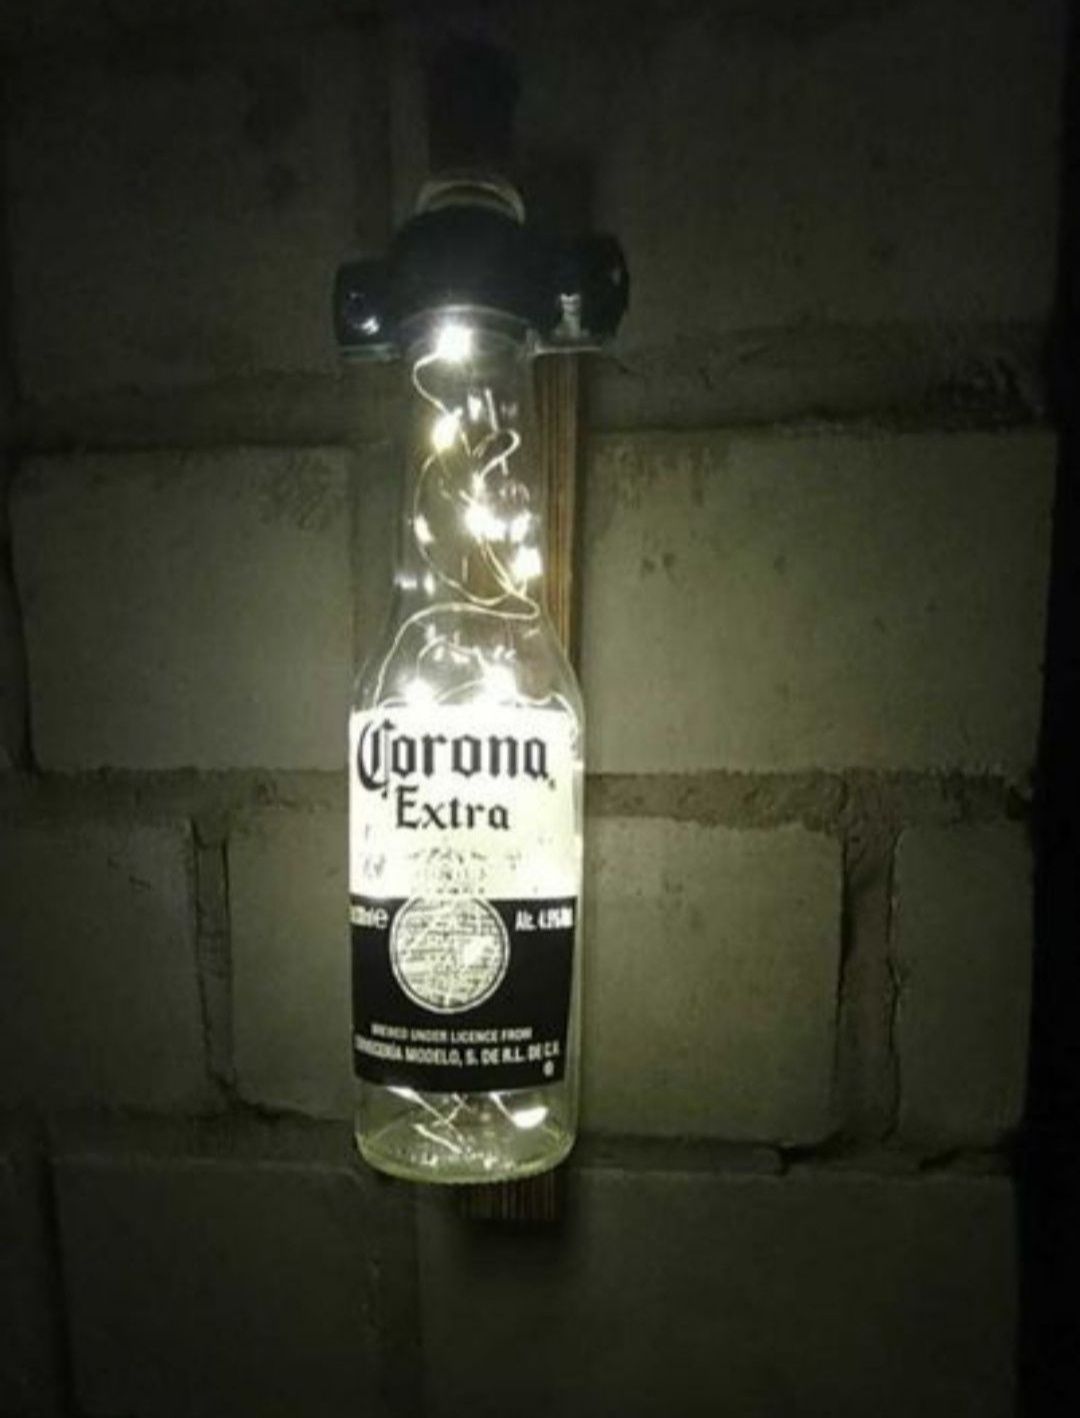 Лампа  з бутилки